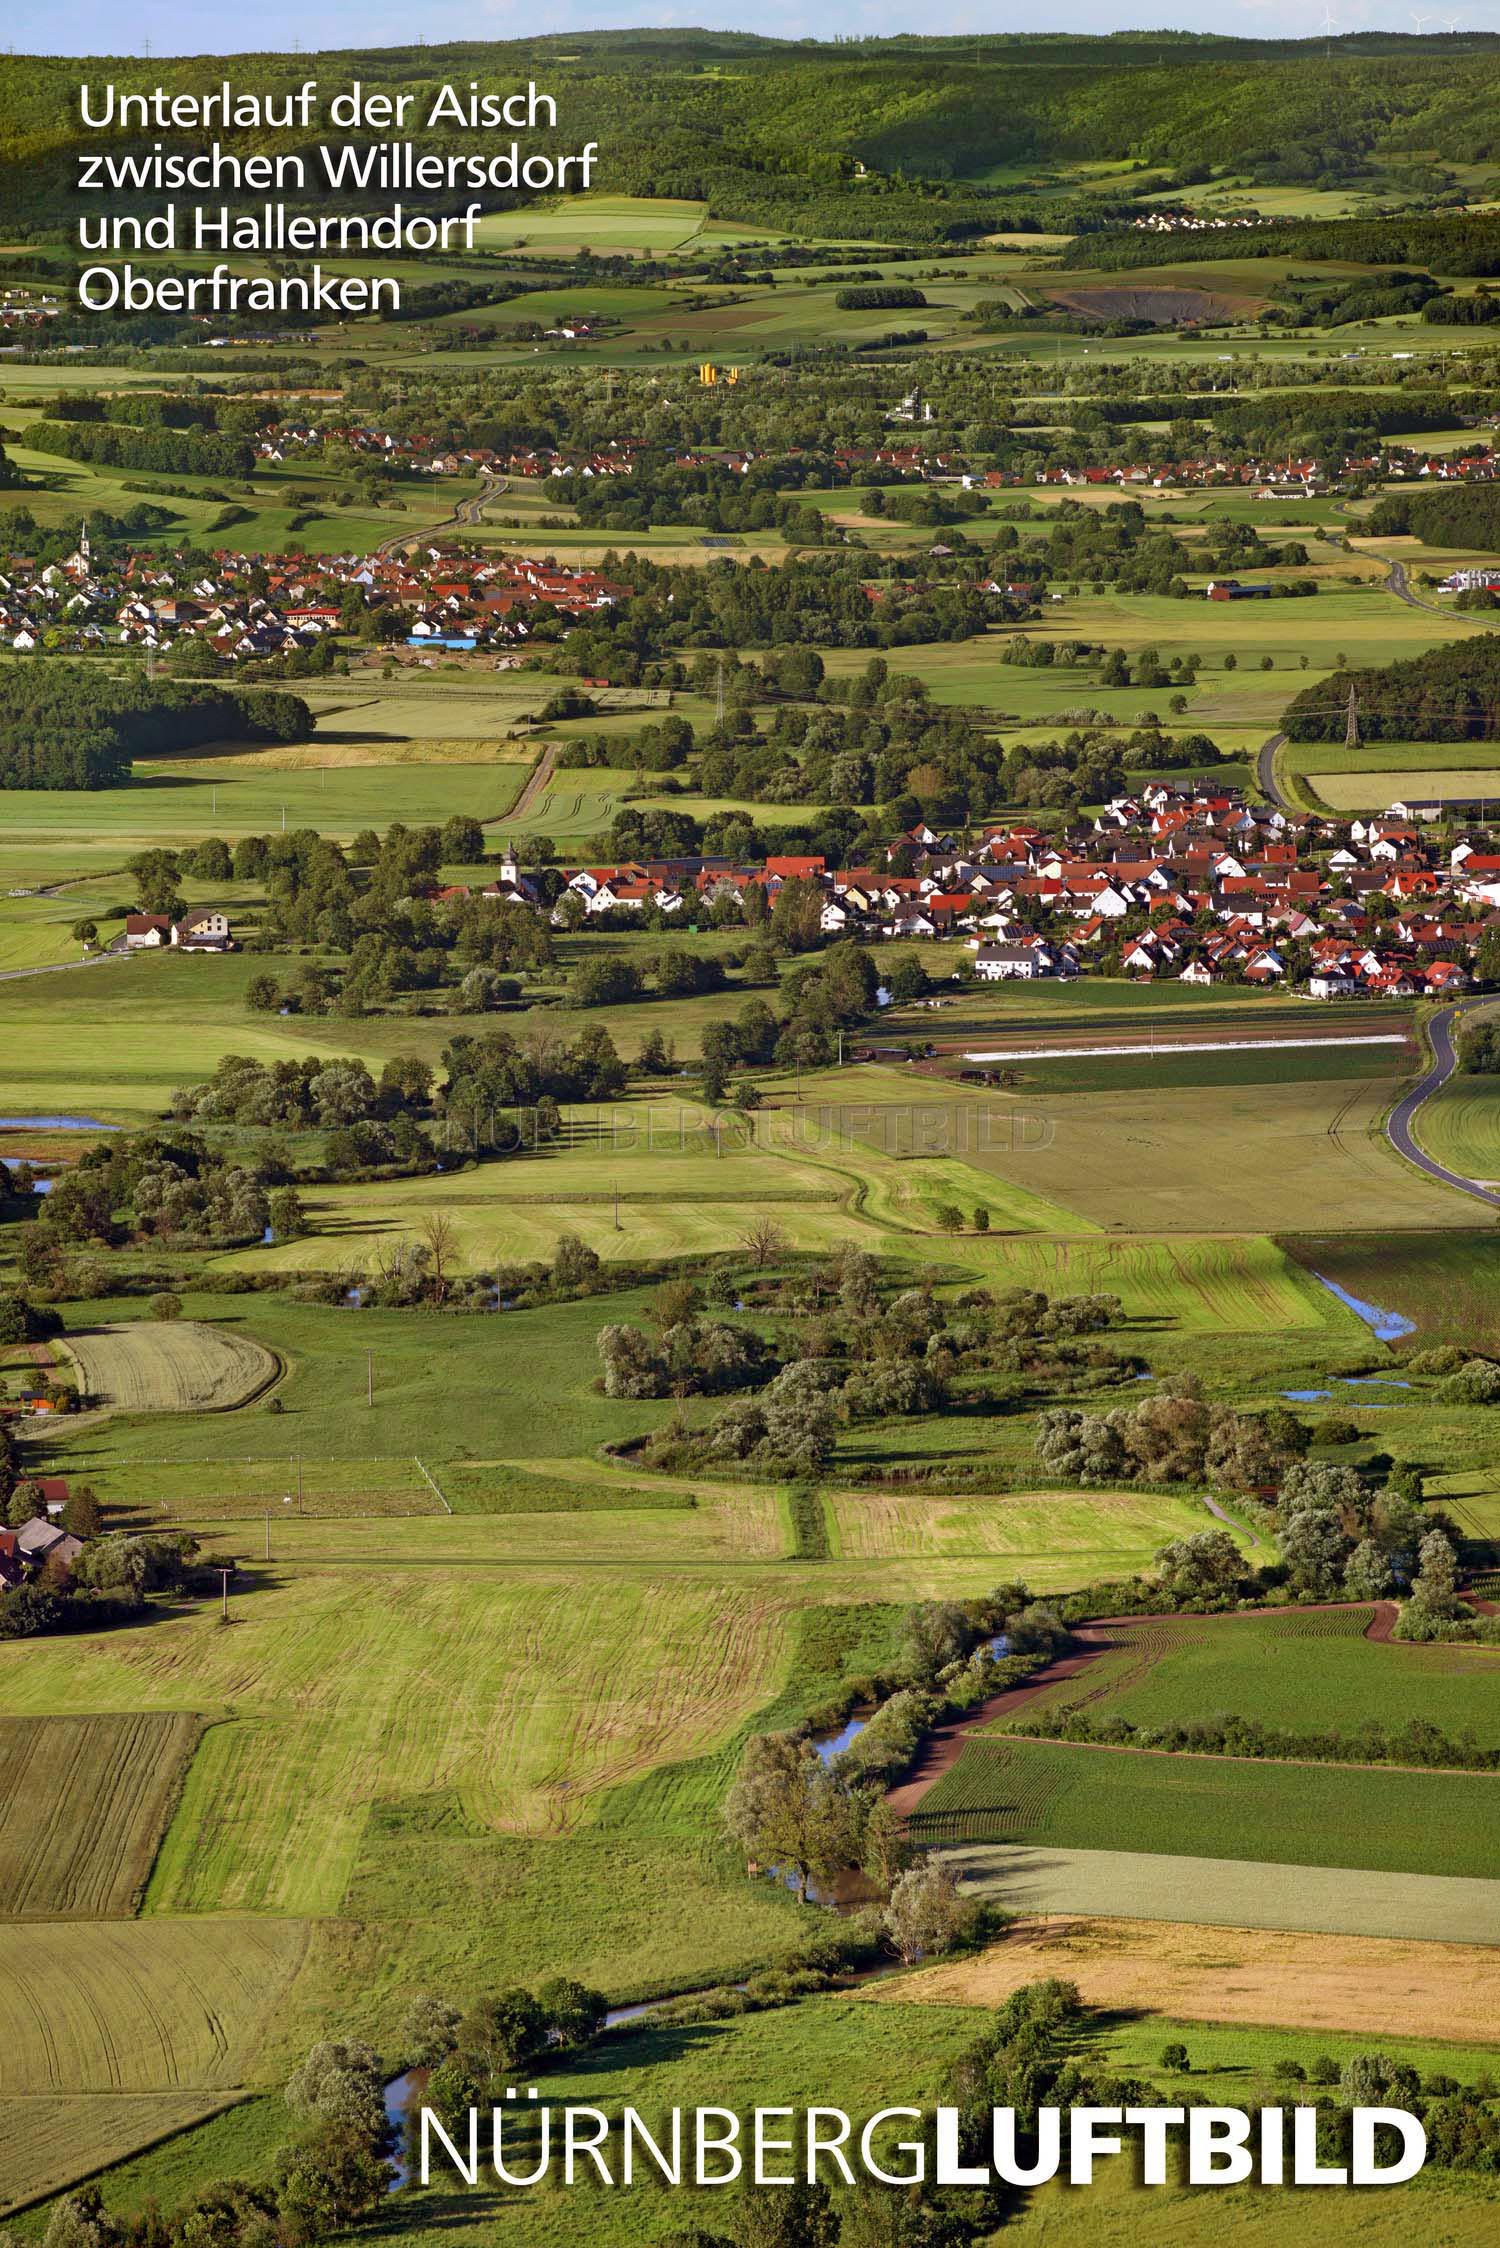 Unterlauf der Aisch zwischen Willersdorf und Hallerndorf, Luftbild